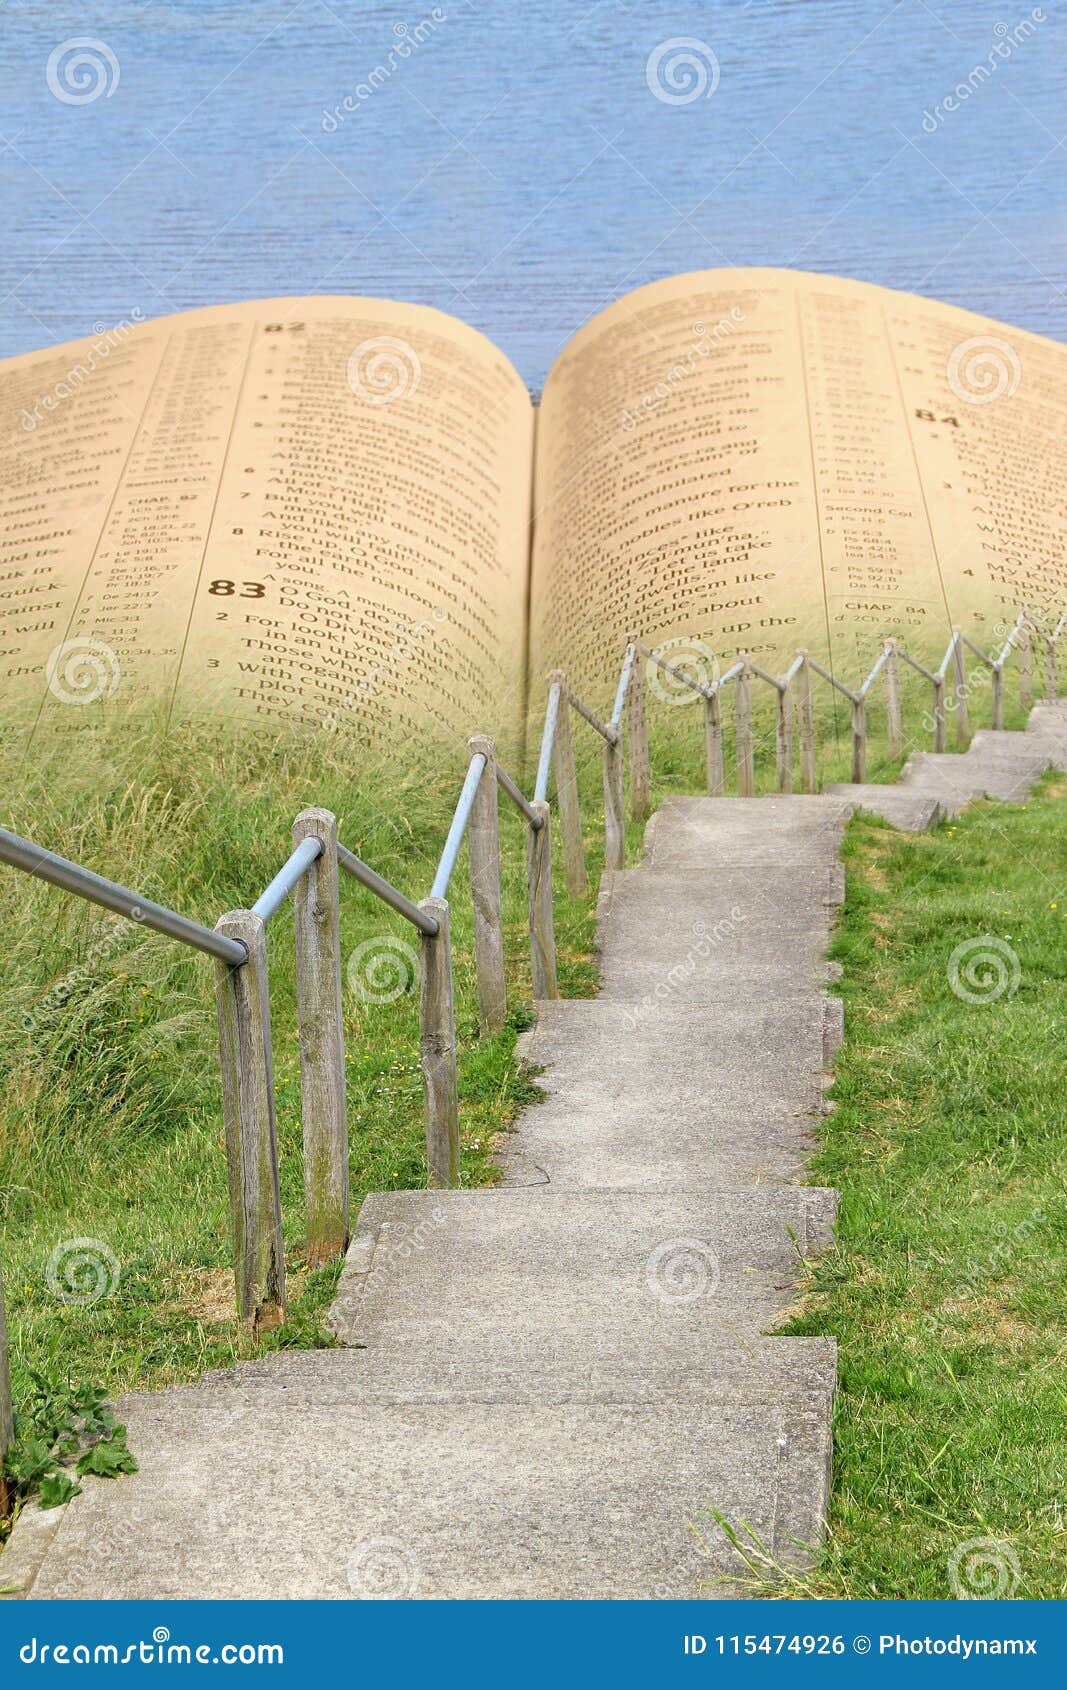 bible narrow path to everlasting life